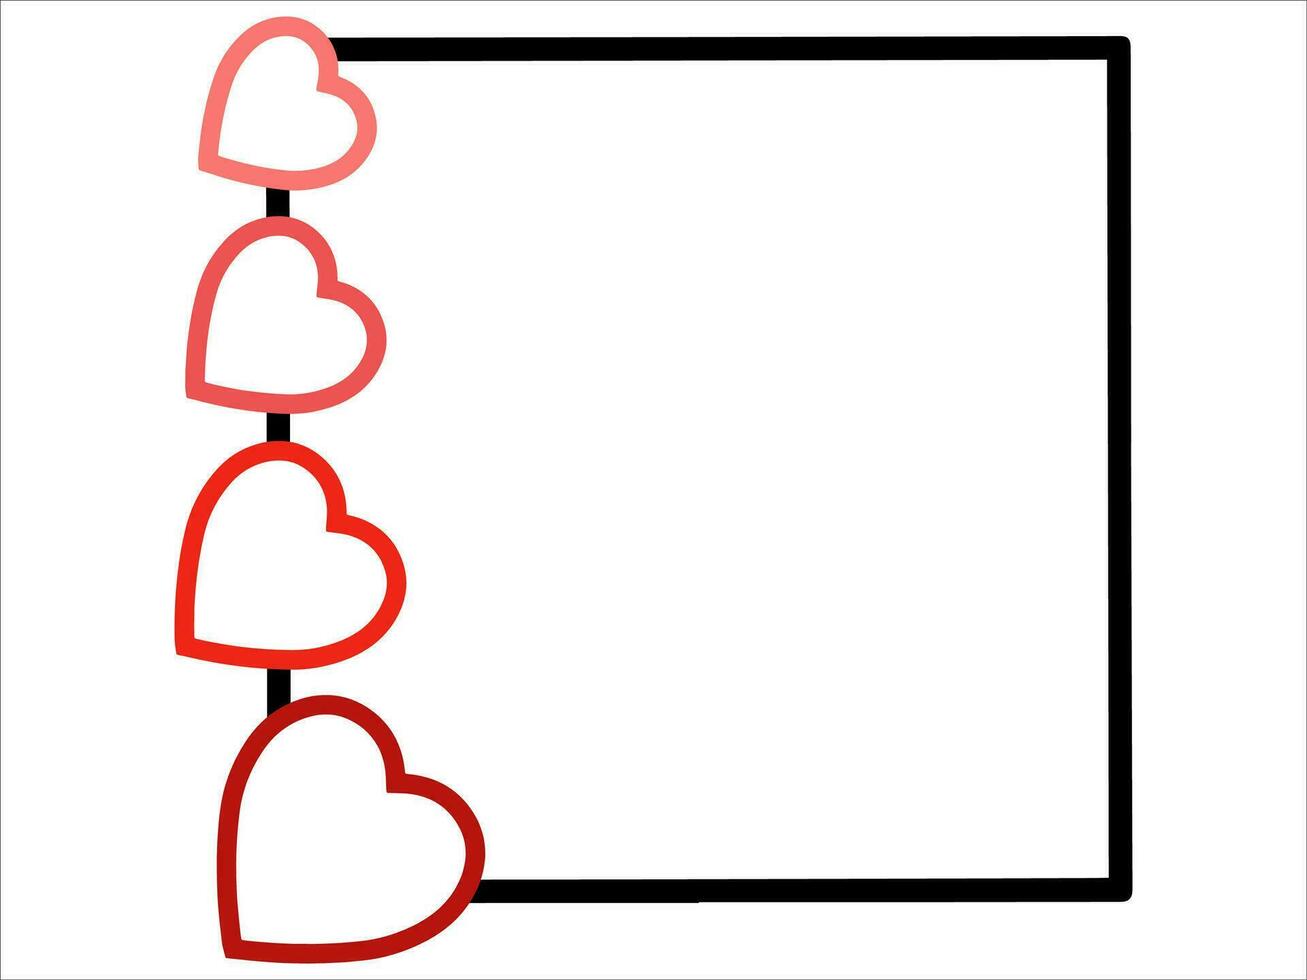 San Valentino cuore telaio sfondo illustrazione vettore